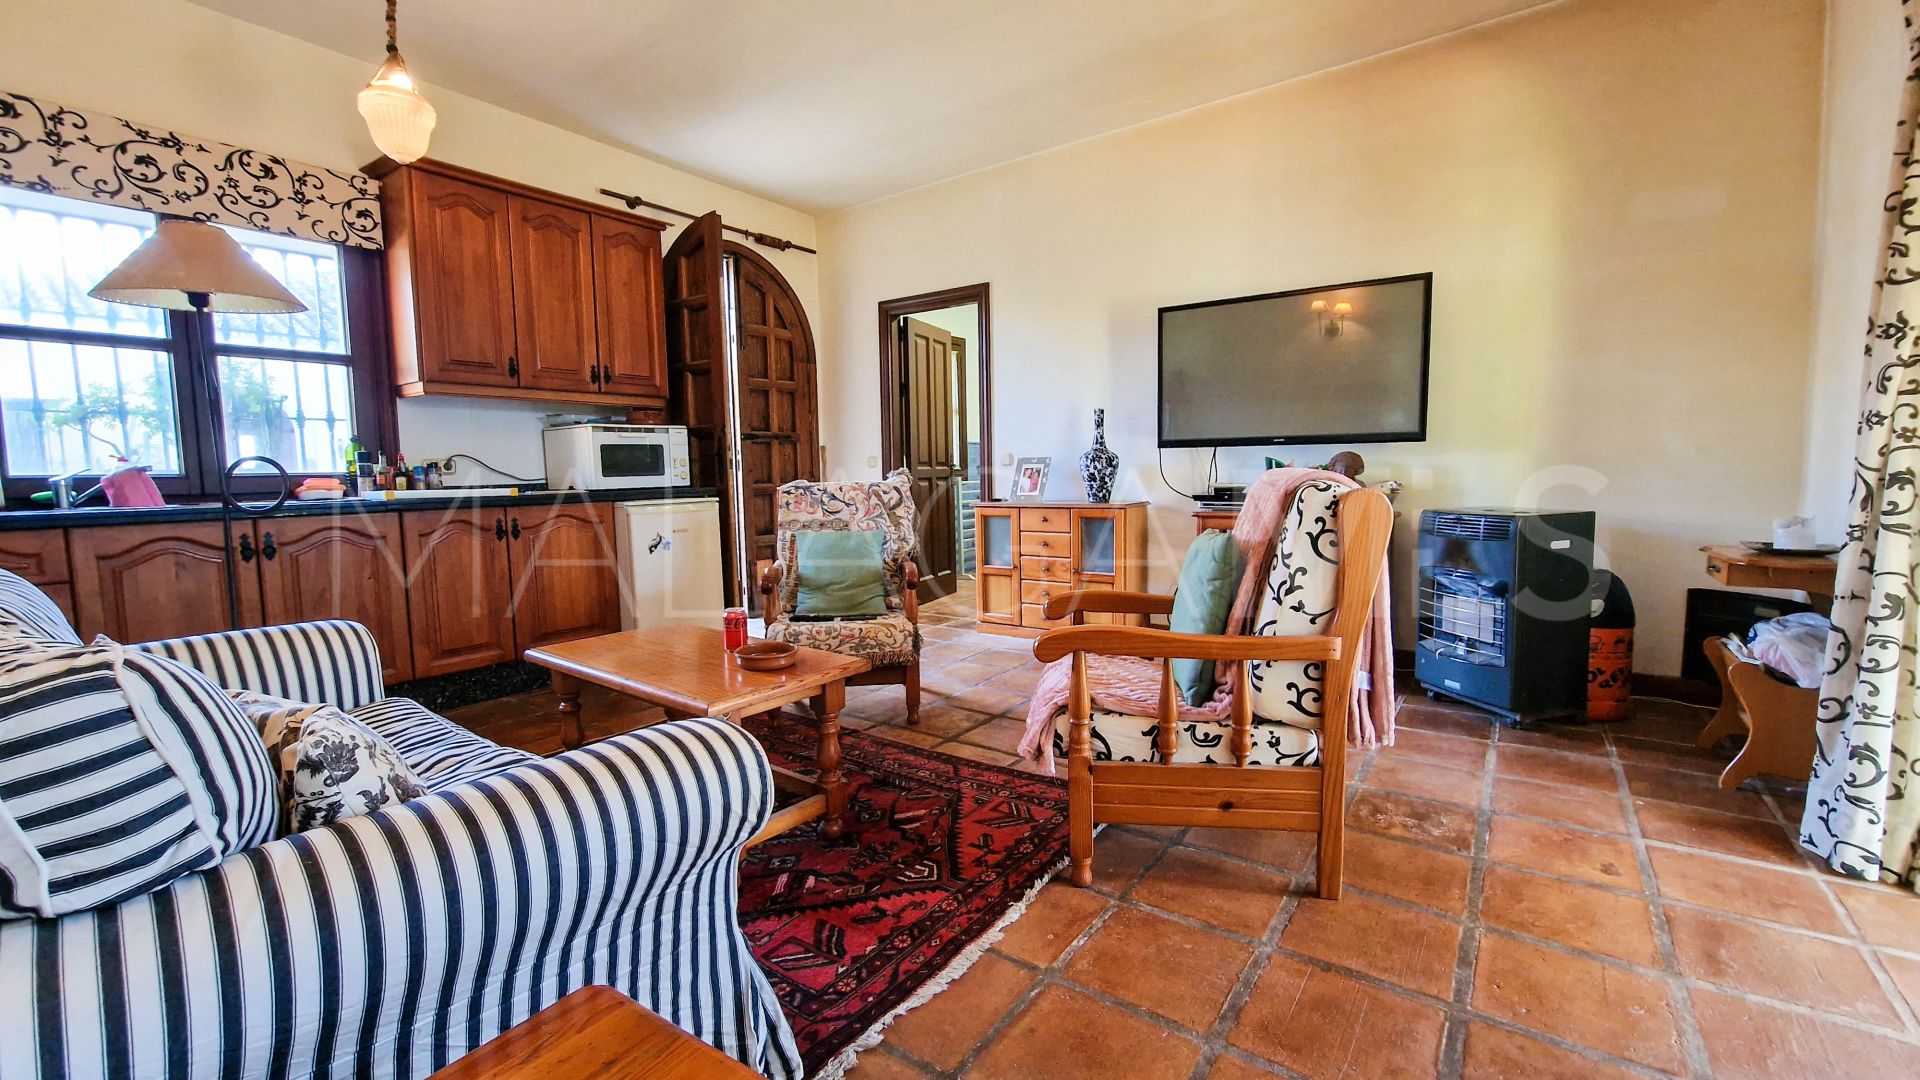 5 bedrooms villa in La Duquesa for sale